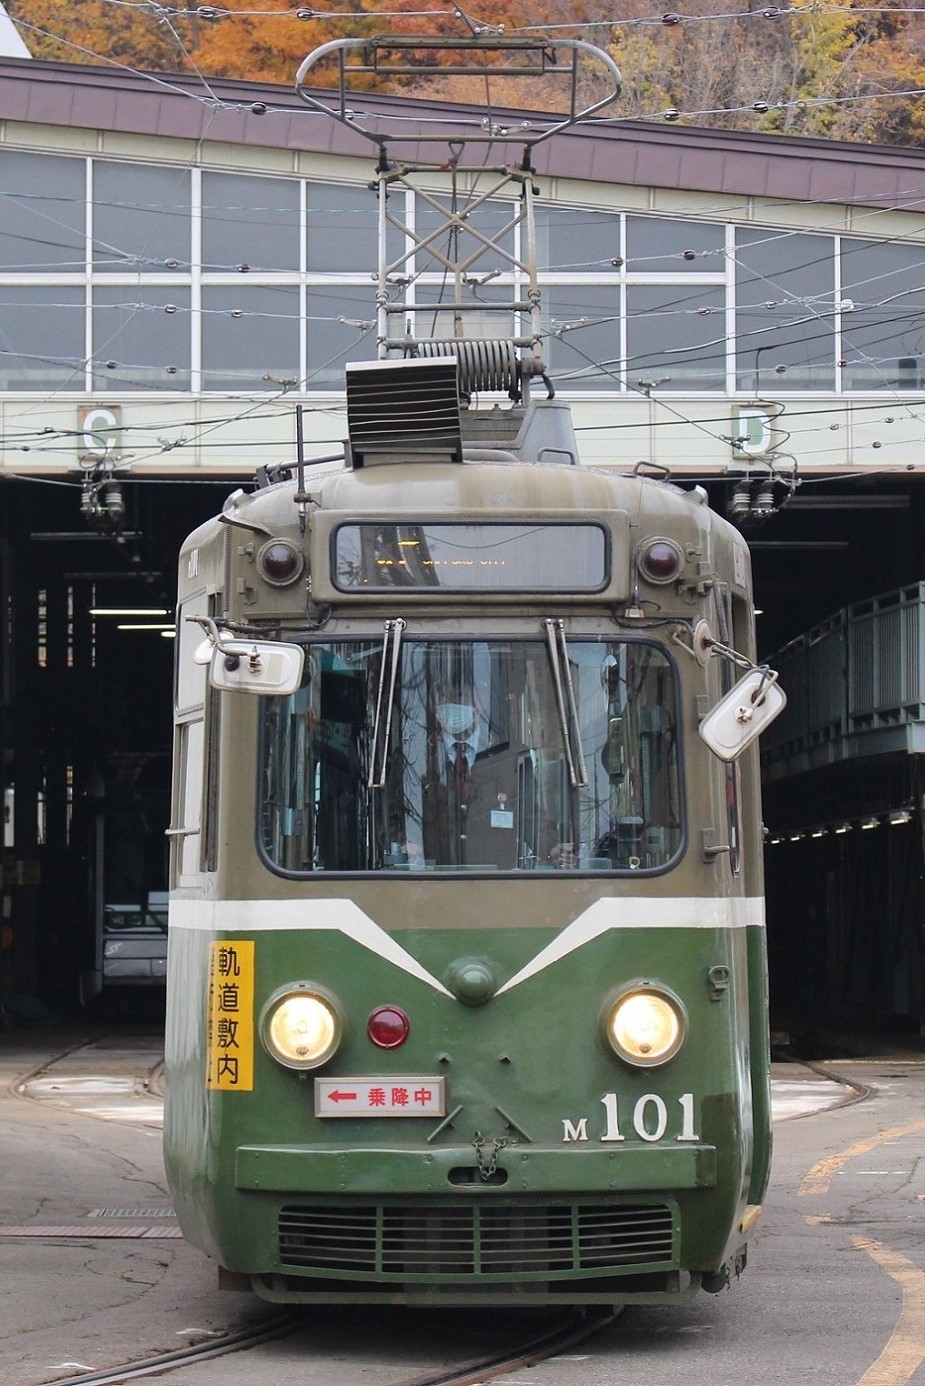 札幌市電M101ラストランa07